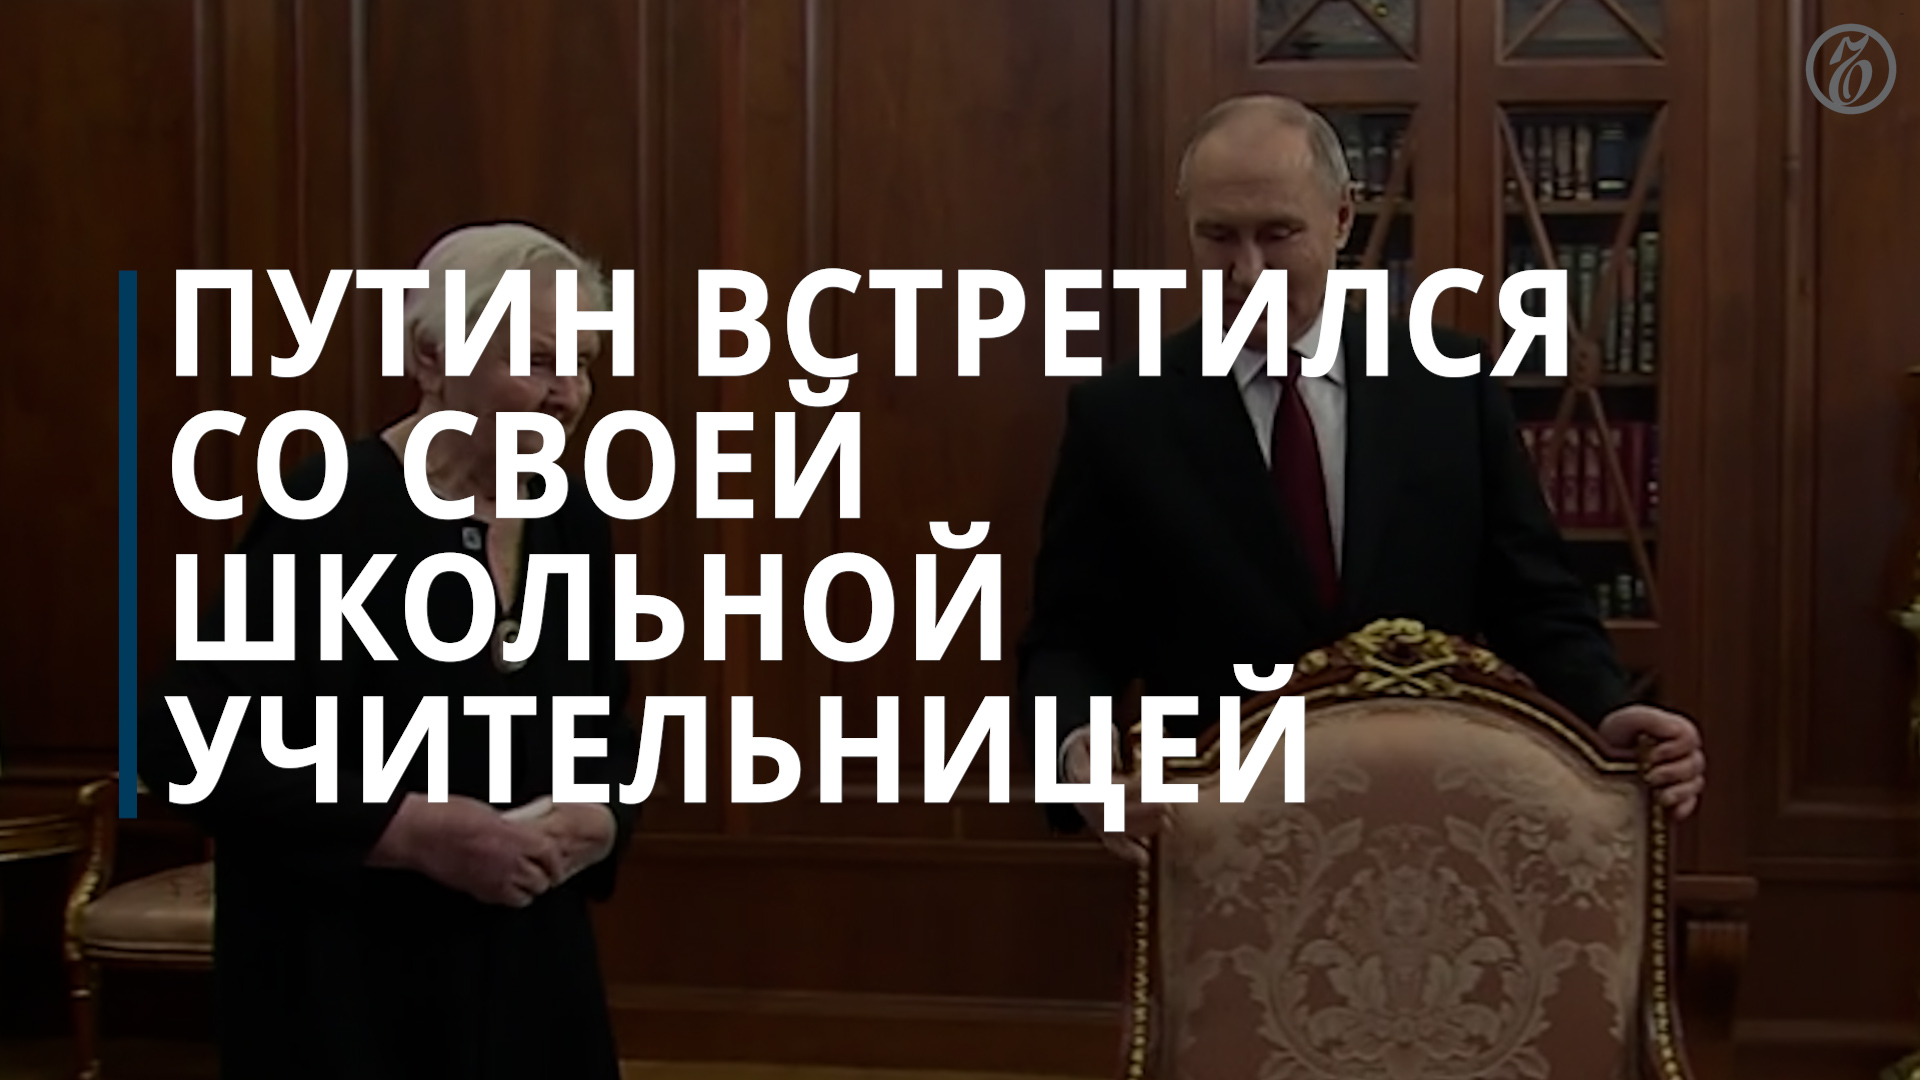 Путин после инаугурации встретился со своей школьной учительницей — Коммерсантъ